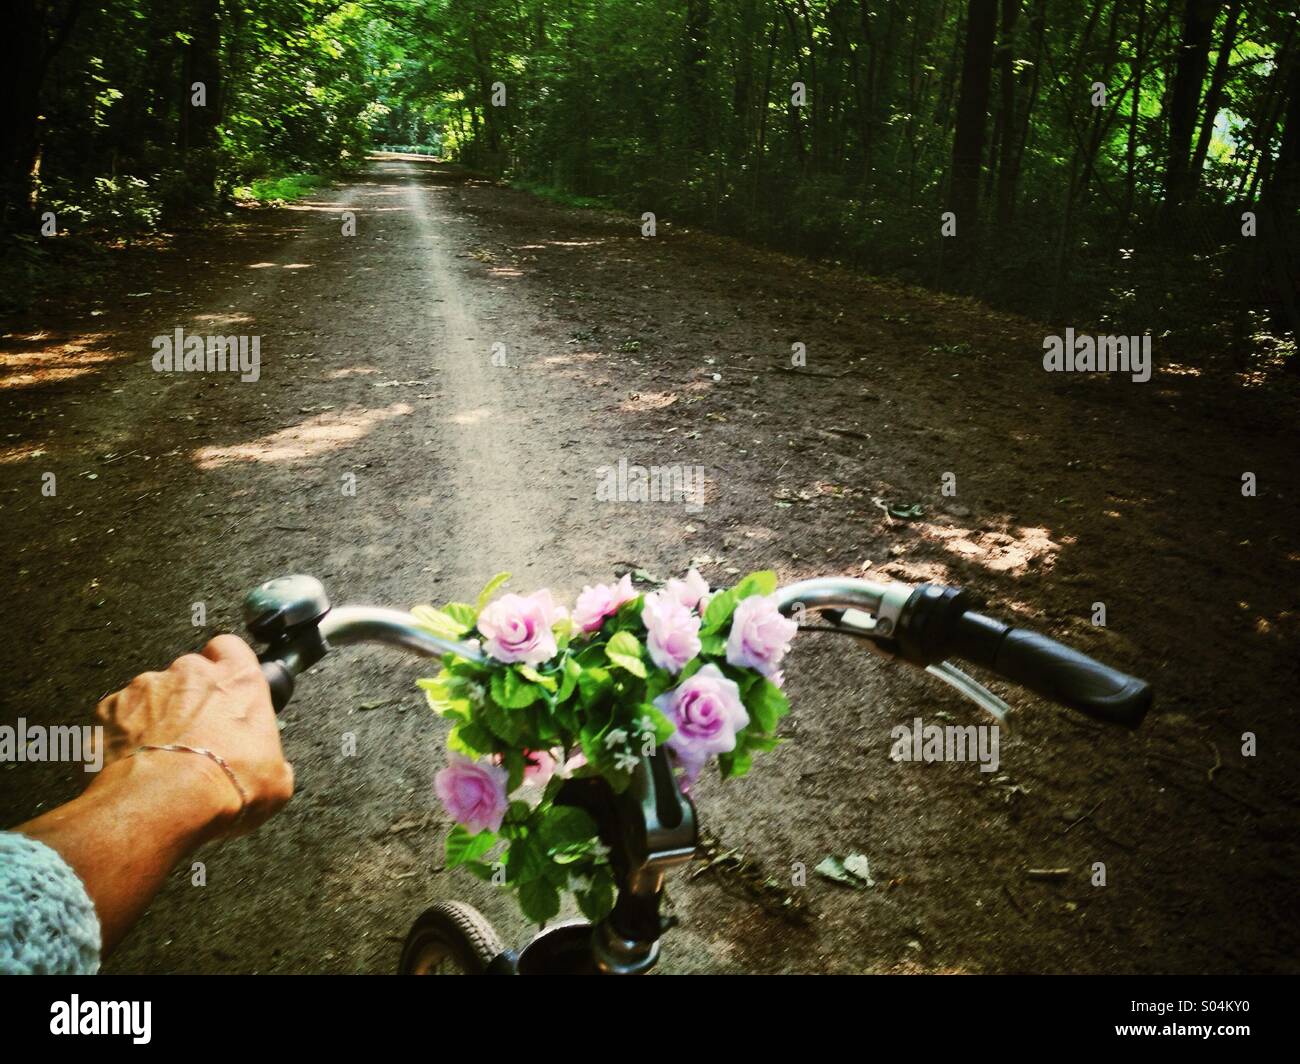 Radfahren durch den Park, Nahaufnahme von Frauenhand holding Fahrradlenker, Blick auf Lane durch Wälder, Sonnenlicht Stockfoto